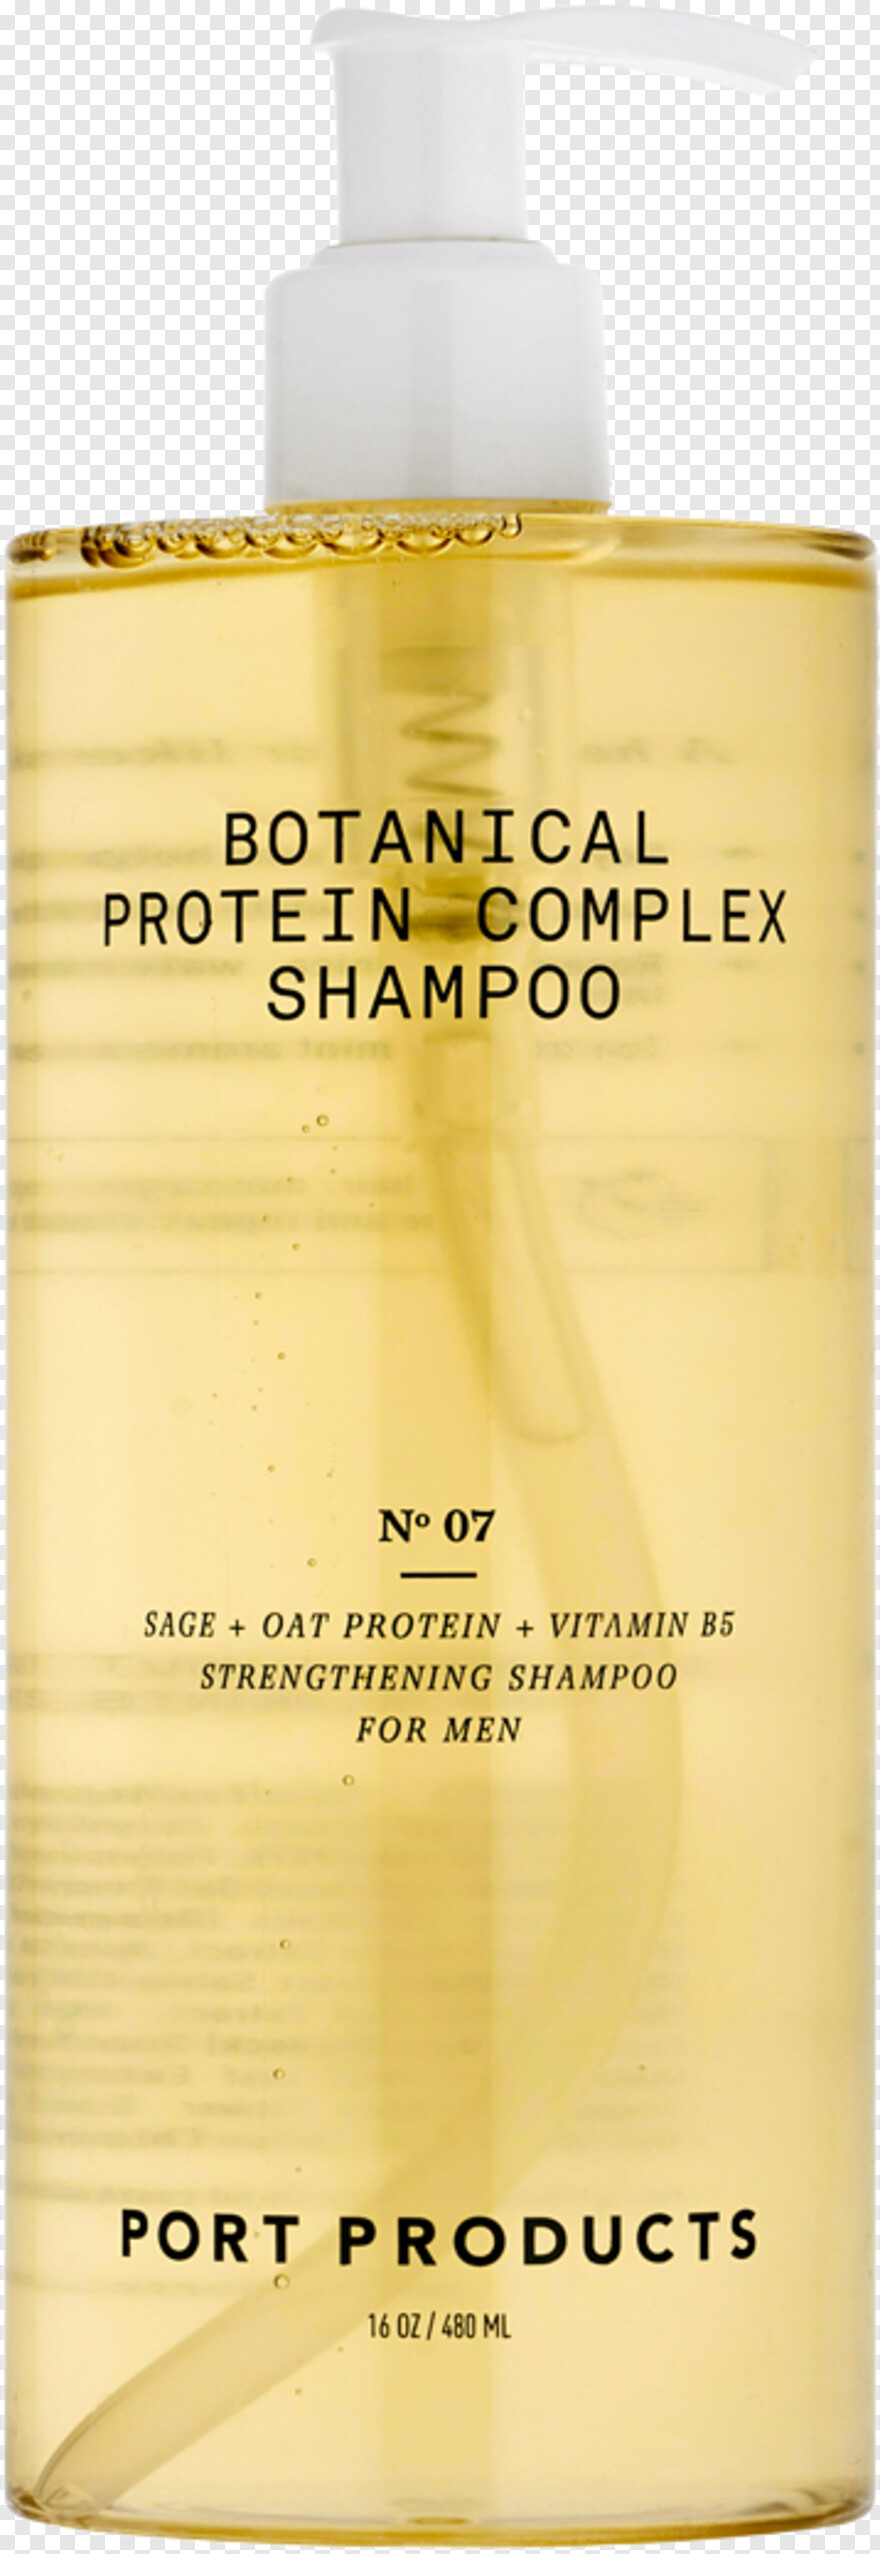 shampoo # 326964